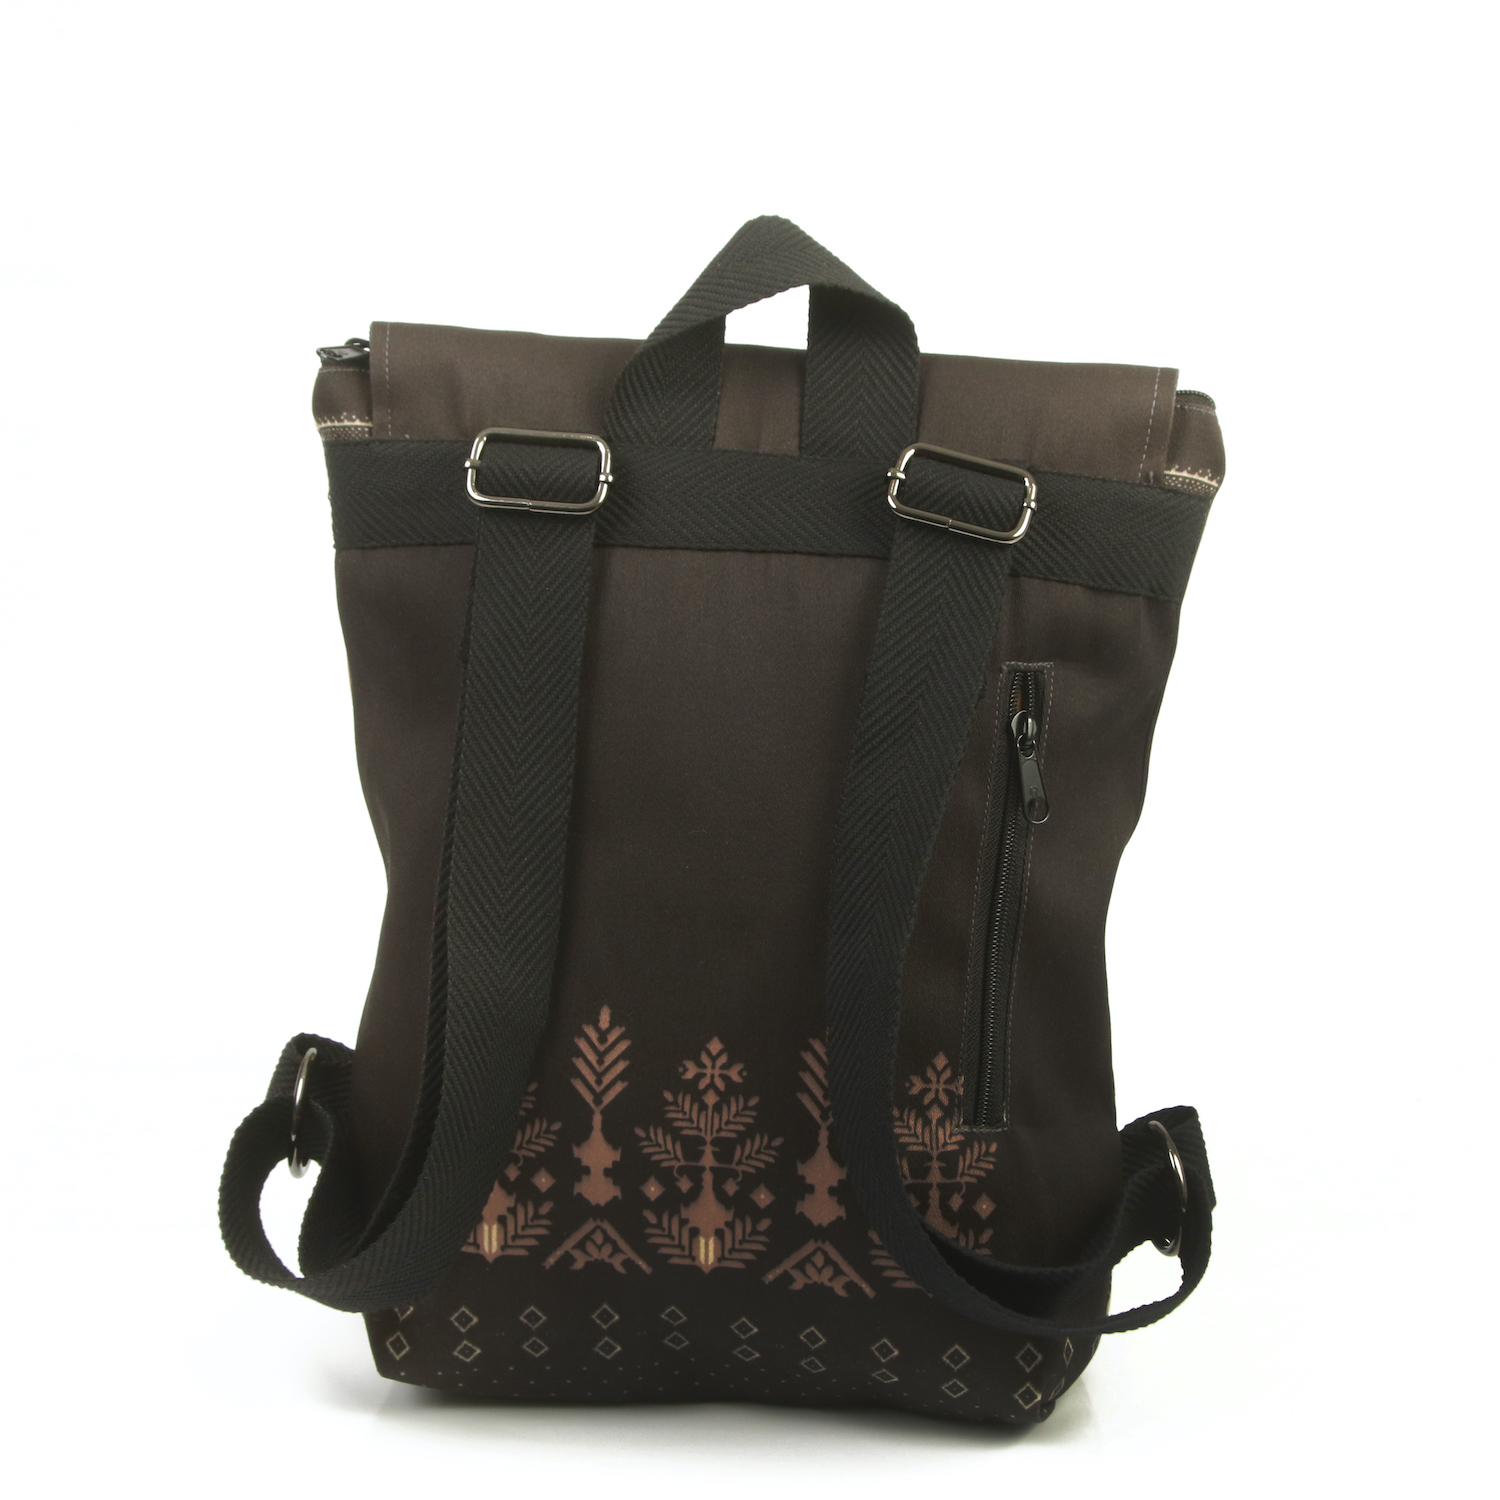 LazyDayz Designs Backpack γυναικείος σάκος πλάτης χειροποίητος bb0701c